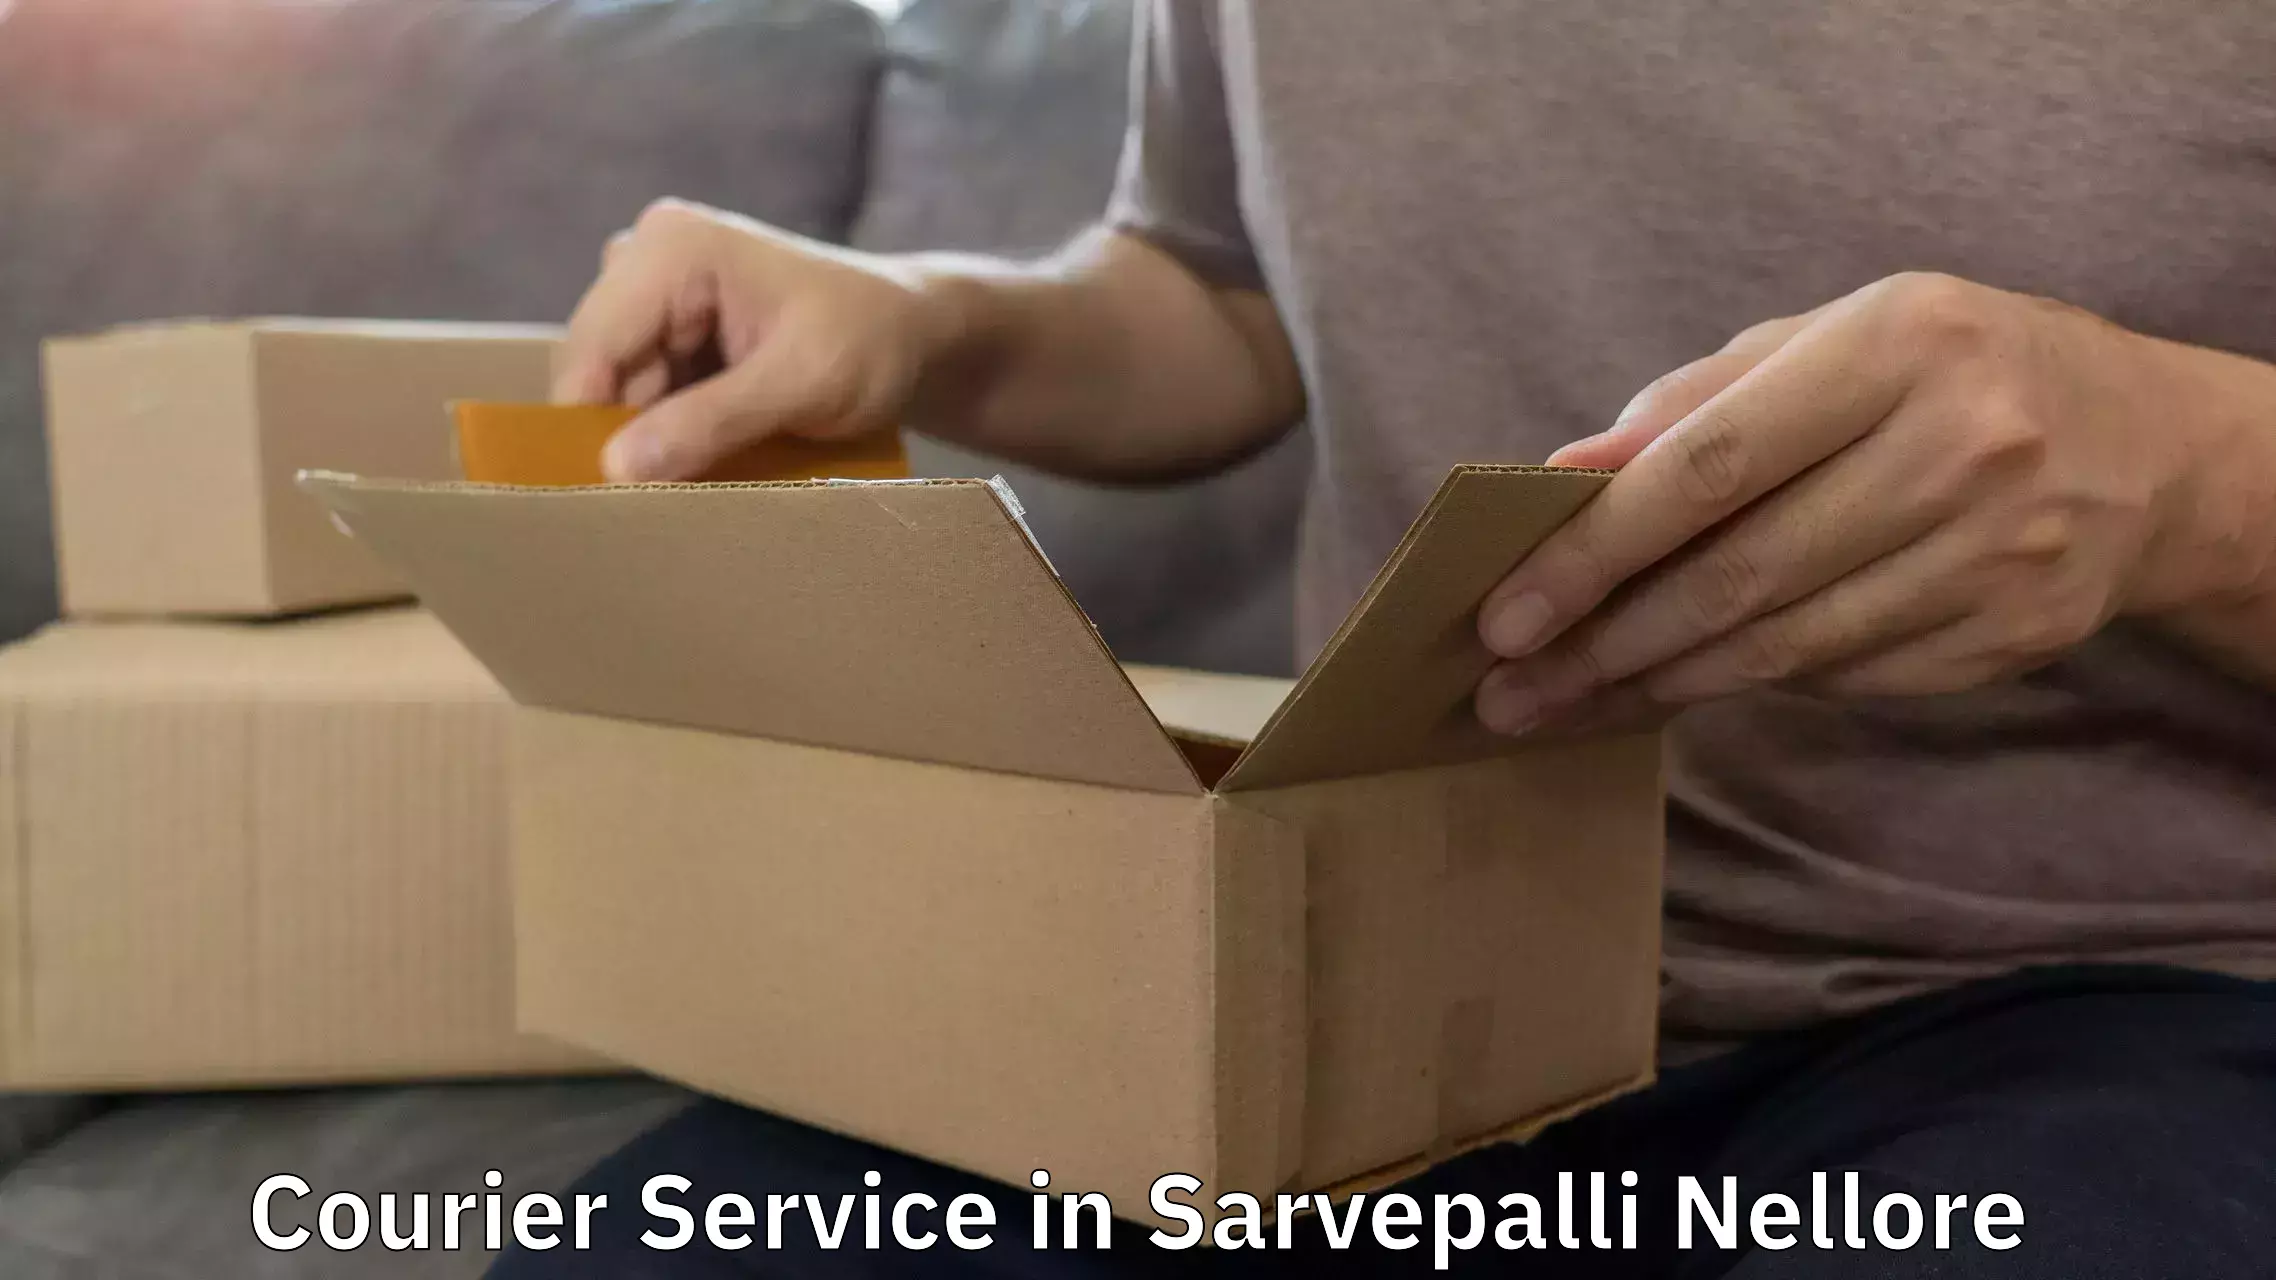 Advanced courier platforms in Sarvepalli Nellore